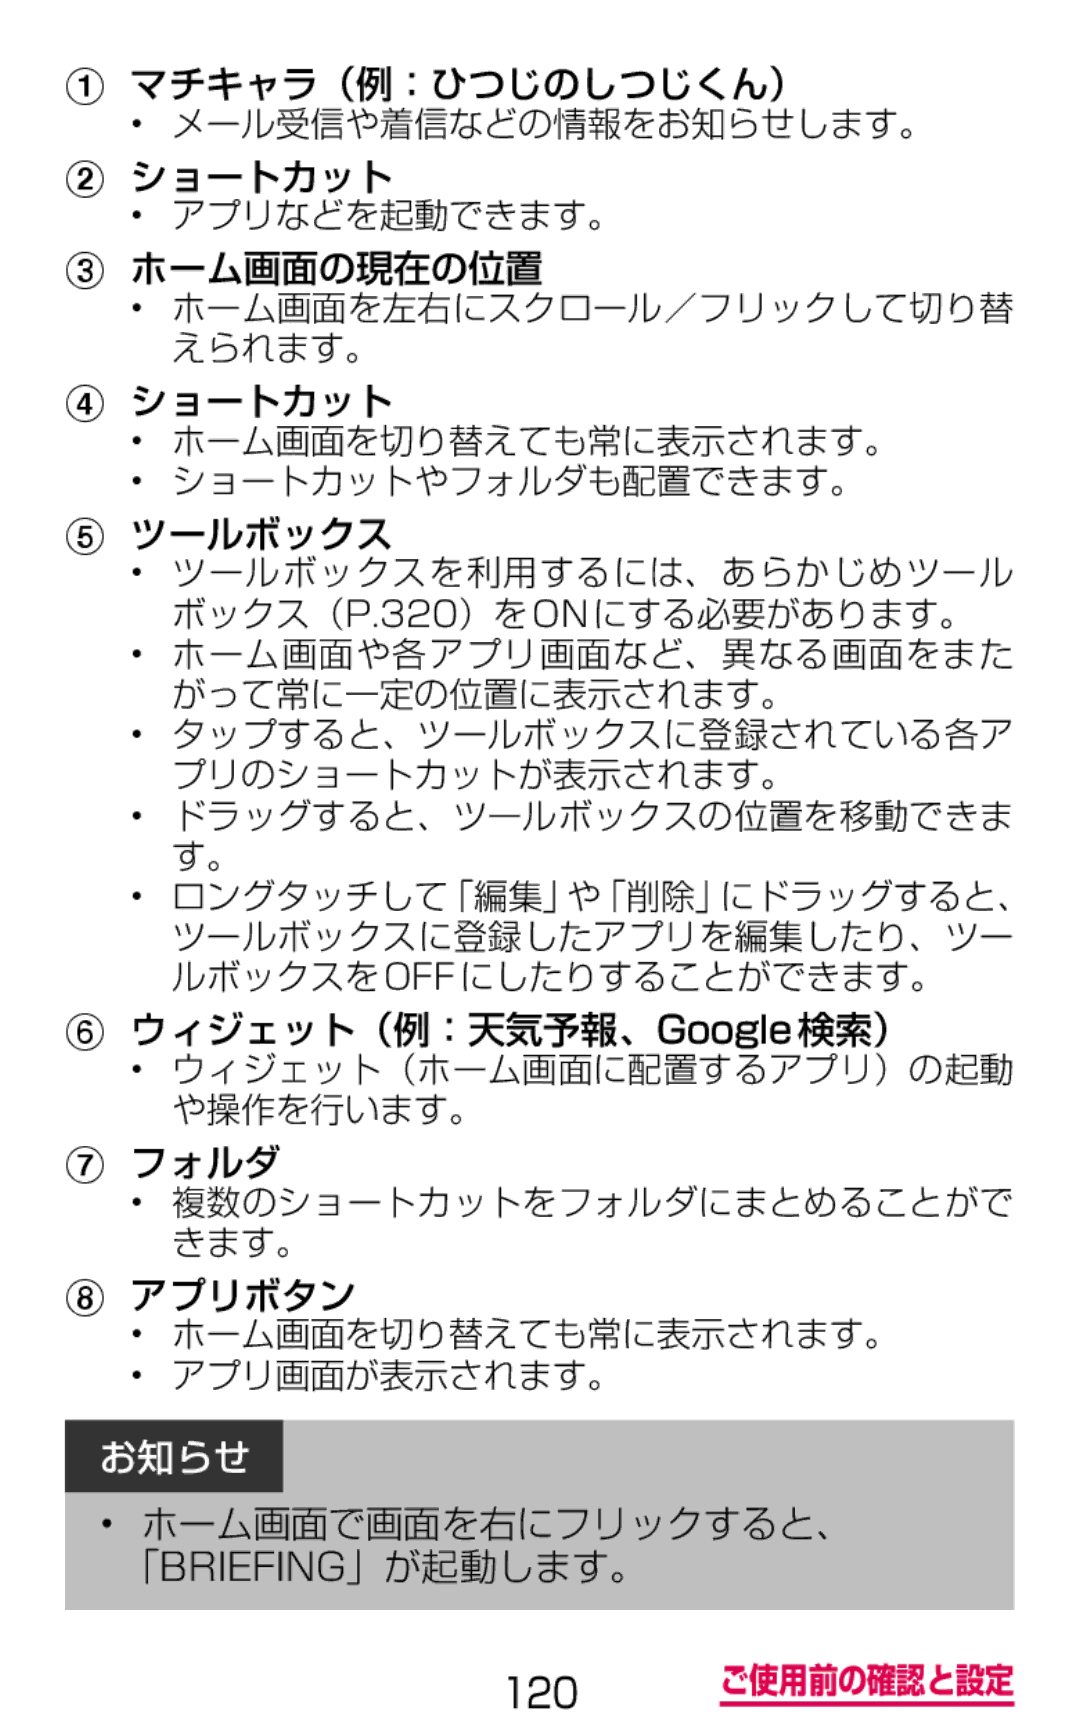 Samsung SM-G900DZKEDCM manual マチキャラ（例：ひつじのしつじくん）, ショートカット, ホーム画面の現在の位置, ツールボックス, ウィジェット（例：天気予報、Google検索）, フォルダ, アプリボタン 